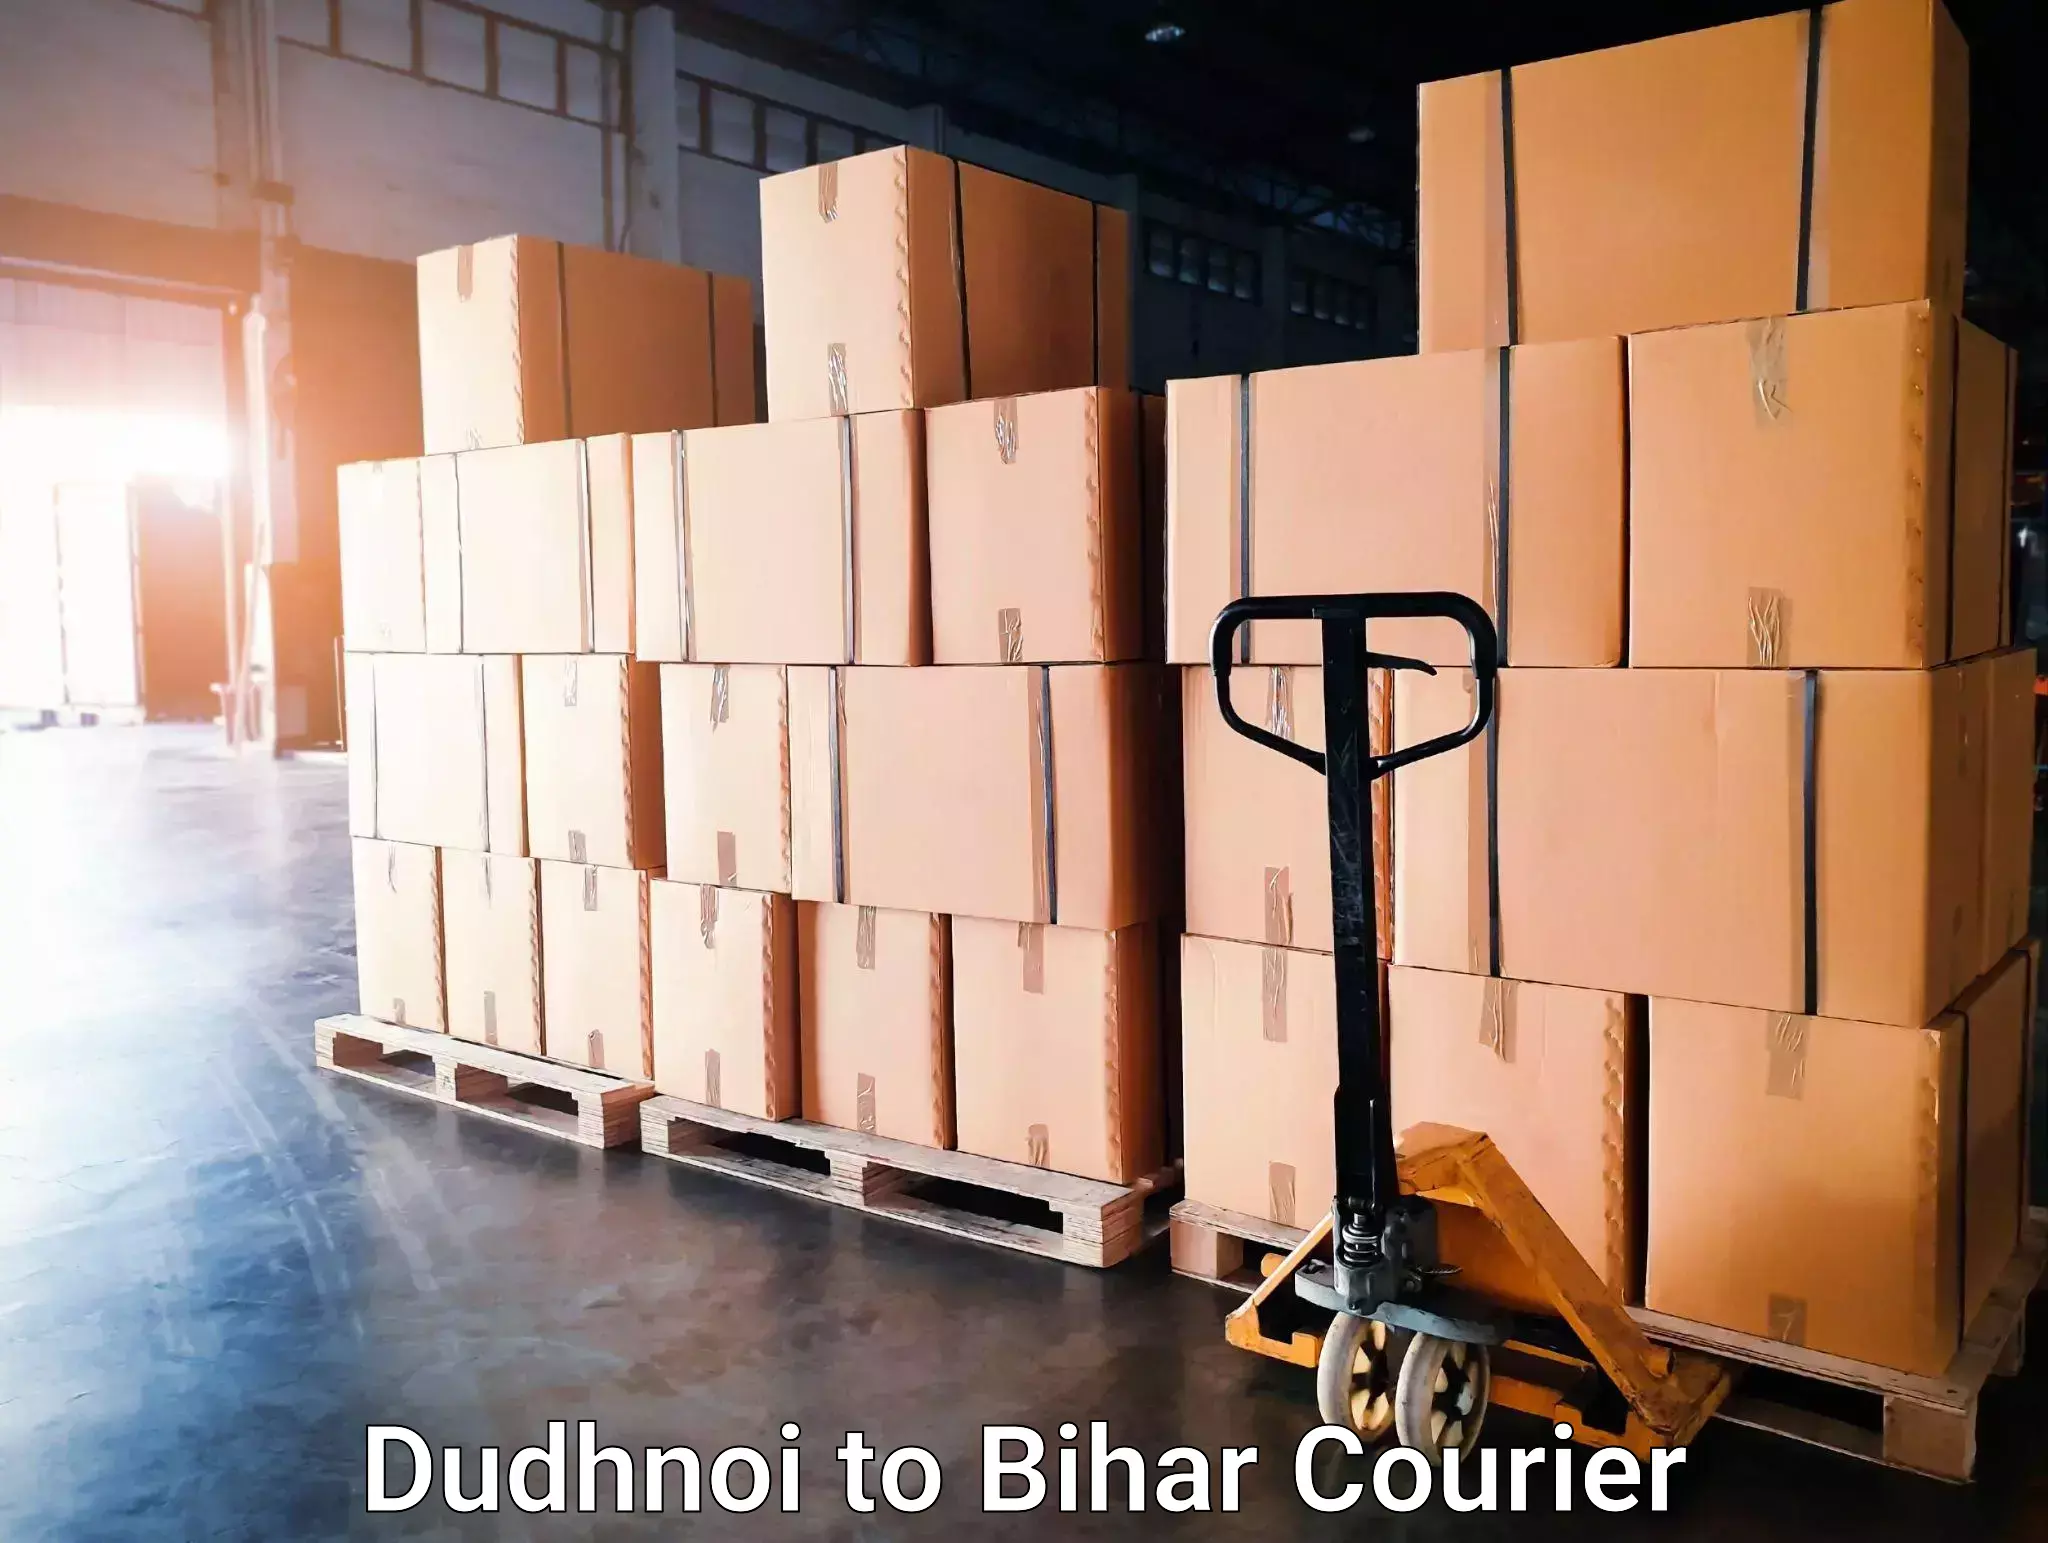 On-demand courier Dudhnoi to Saharsa